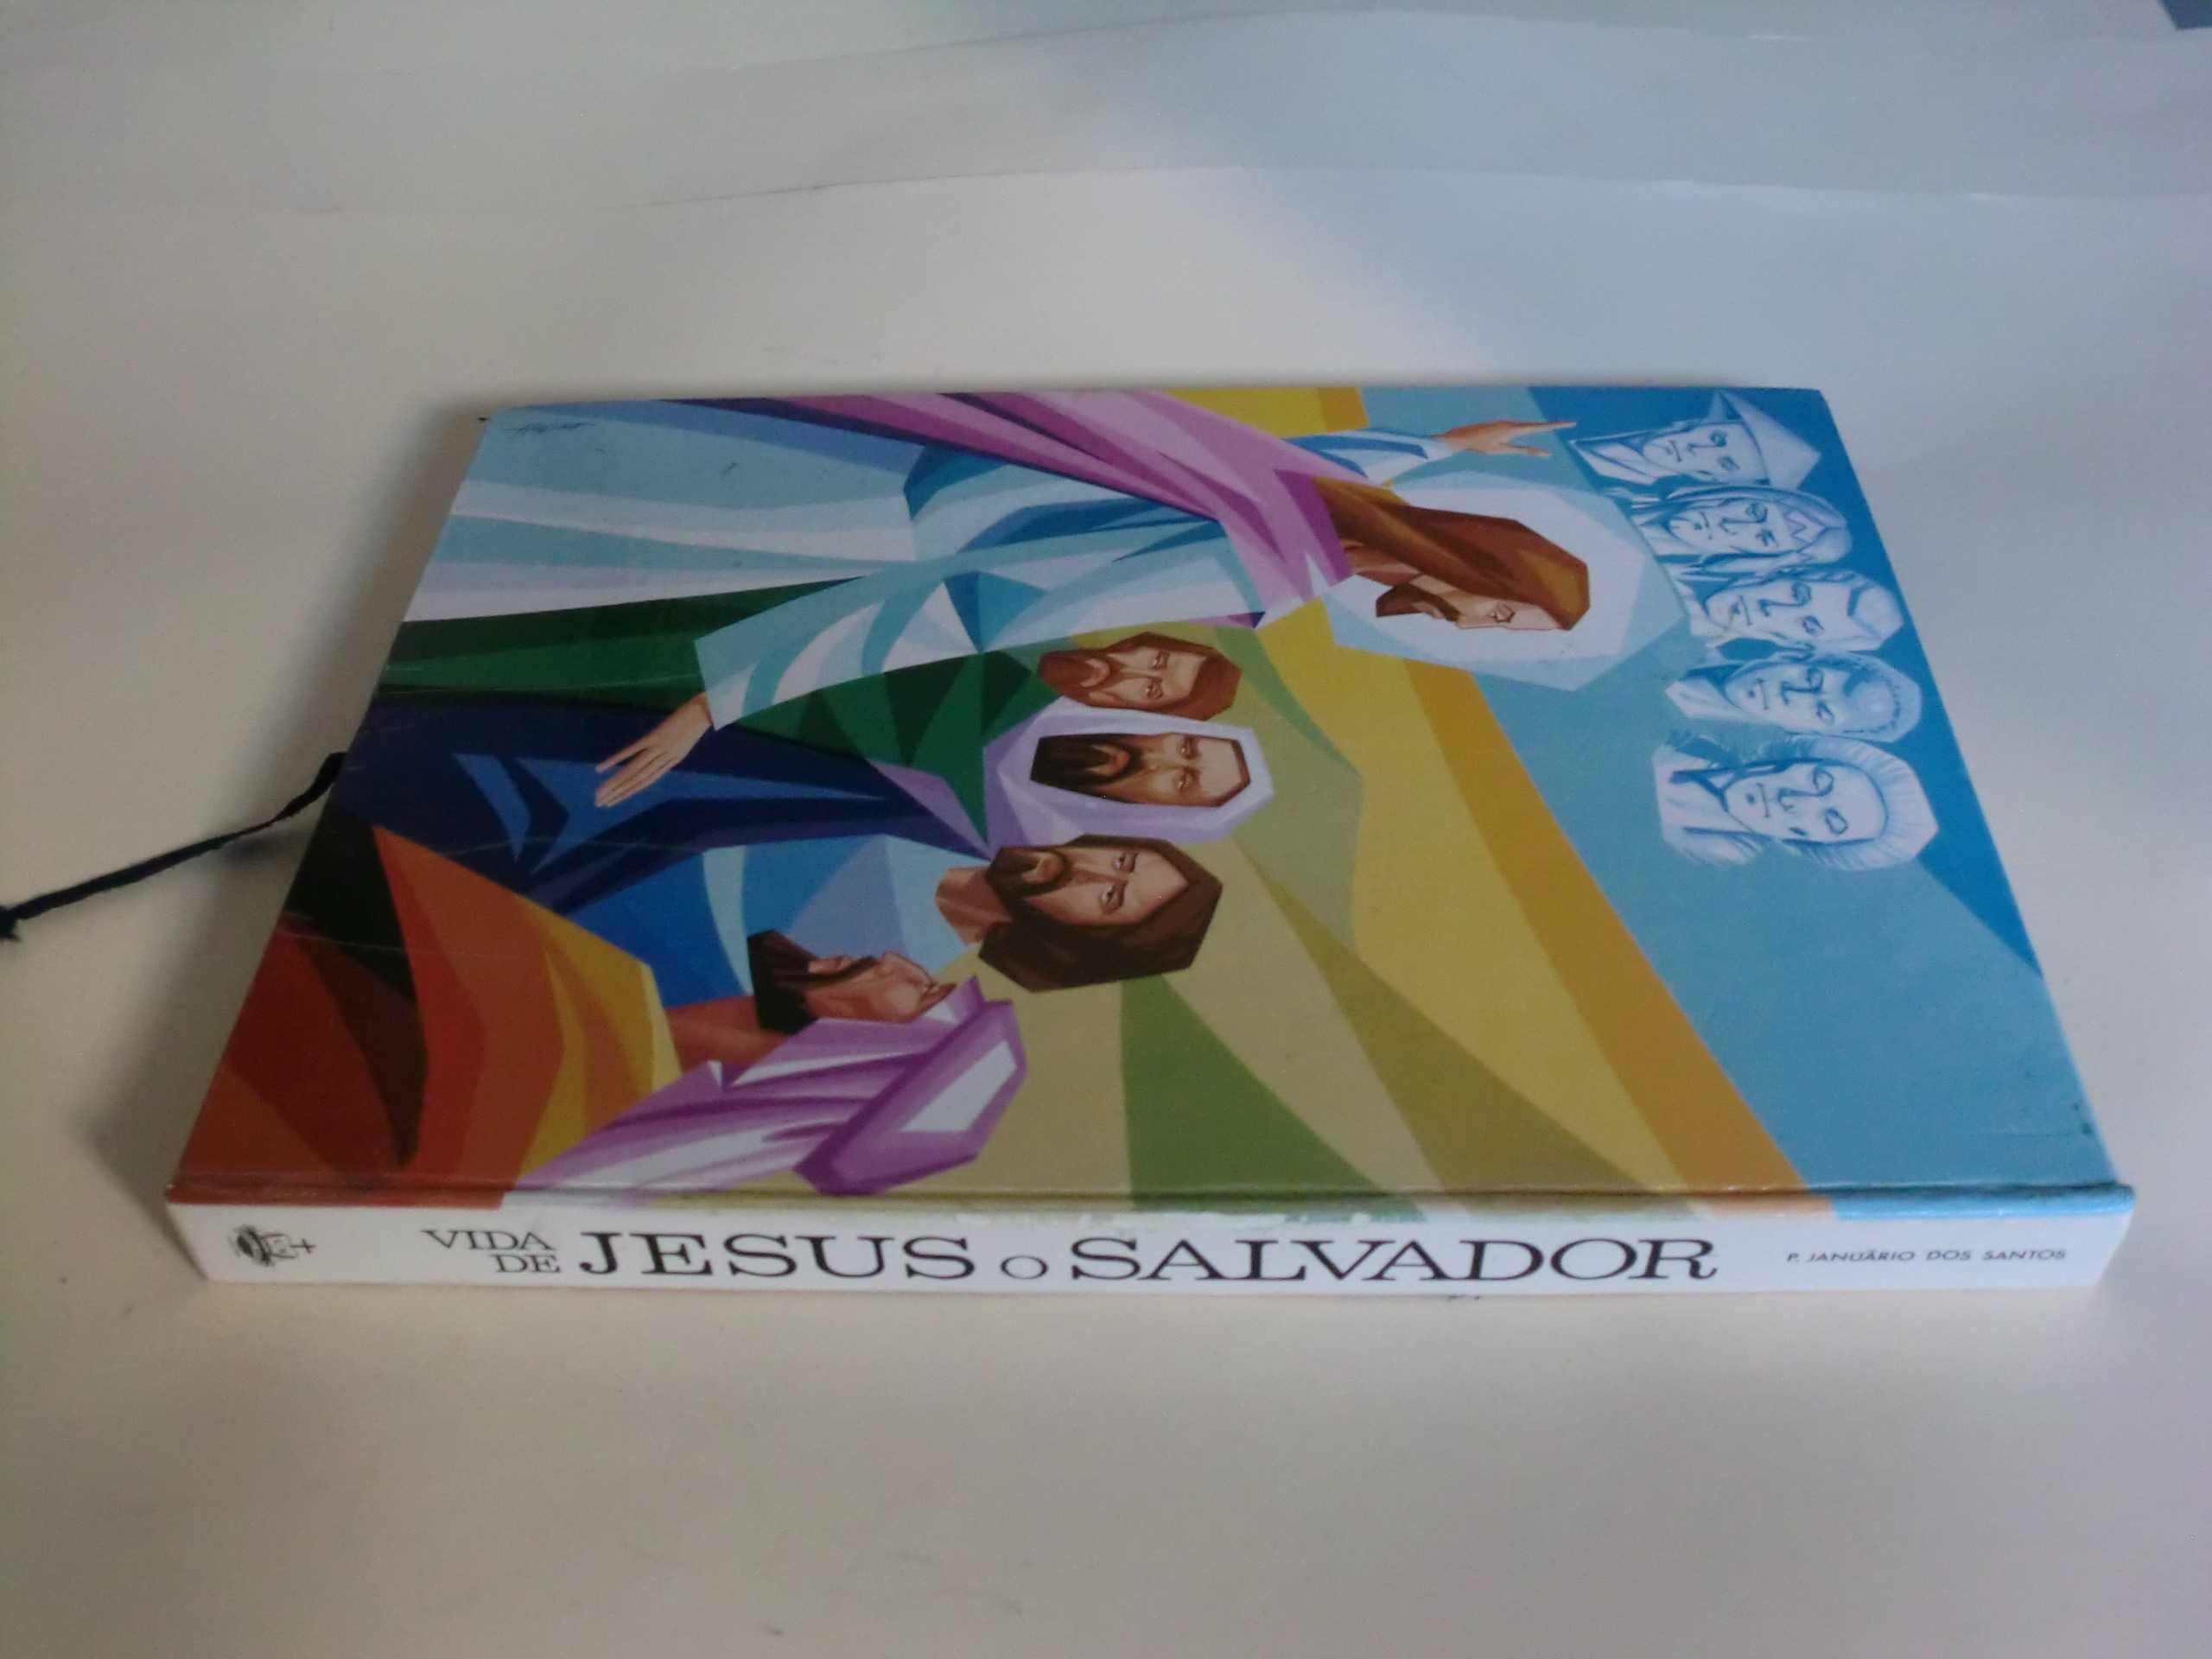 Vida de Jesus, o Salvador
do Padre Januário dos Santos